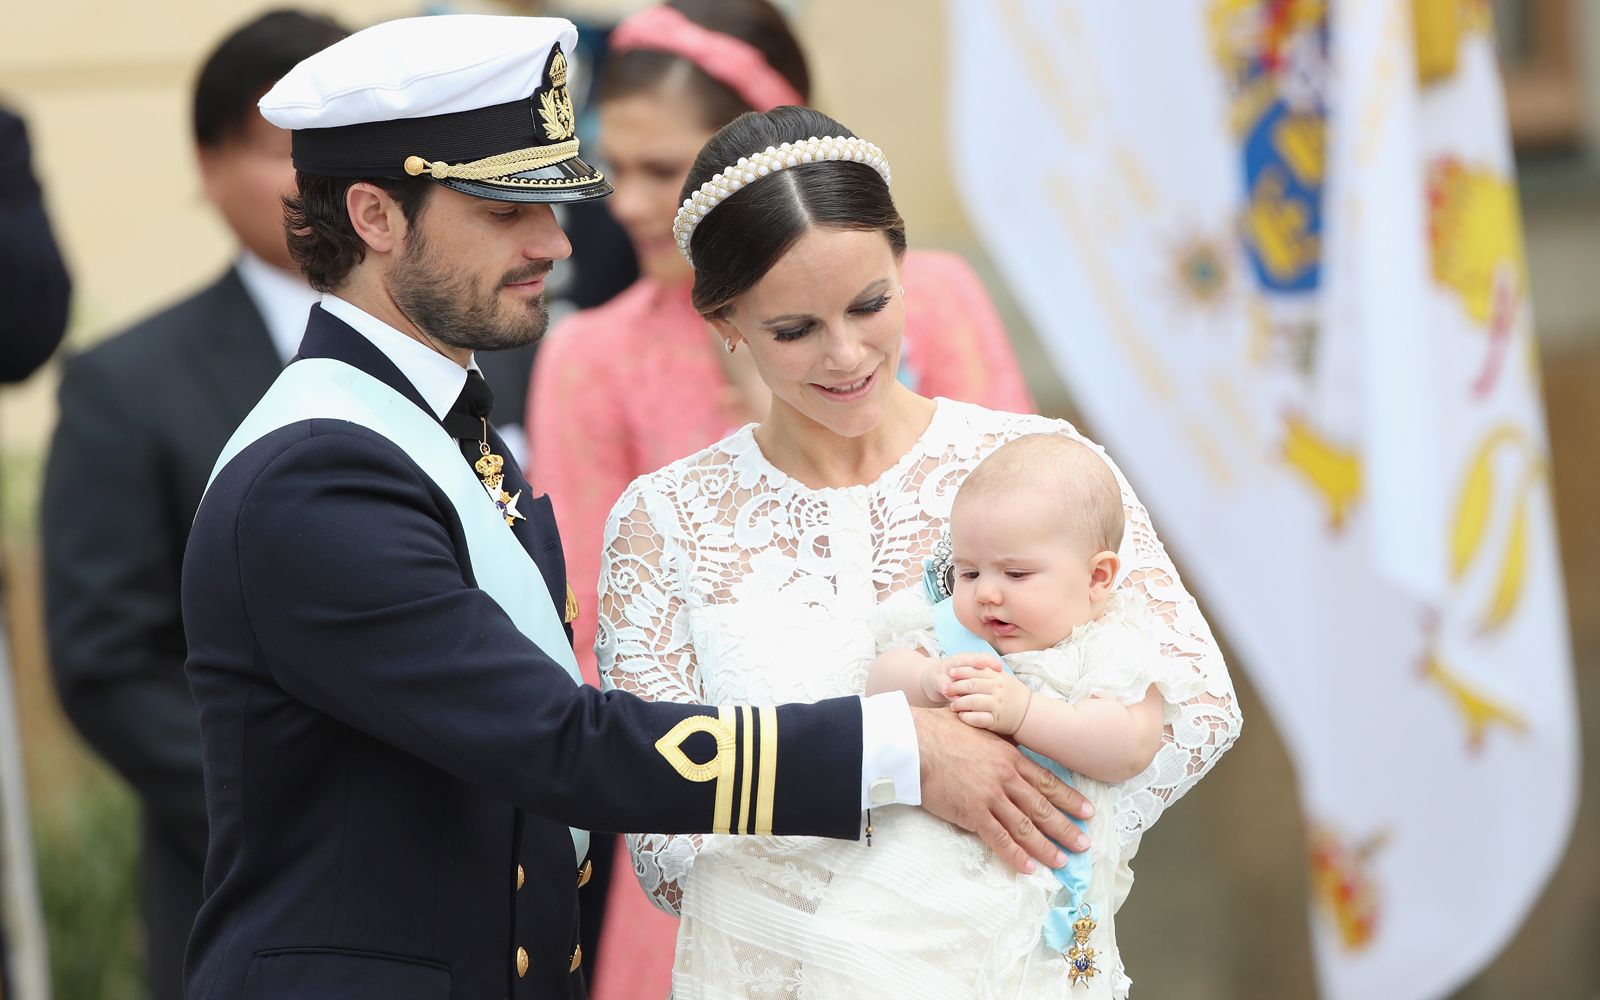 スウェーデンのアレクサンダー王子の洗礼式が行われる